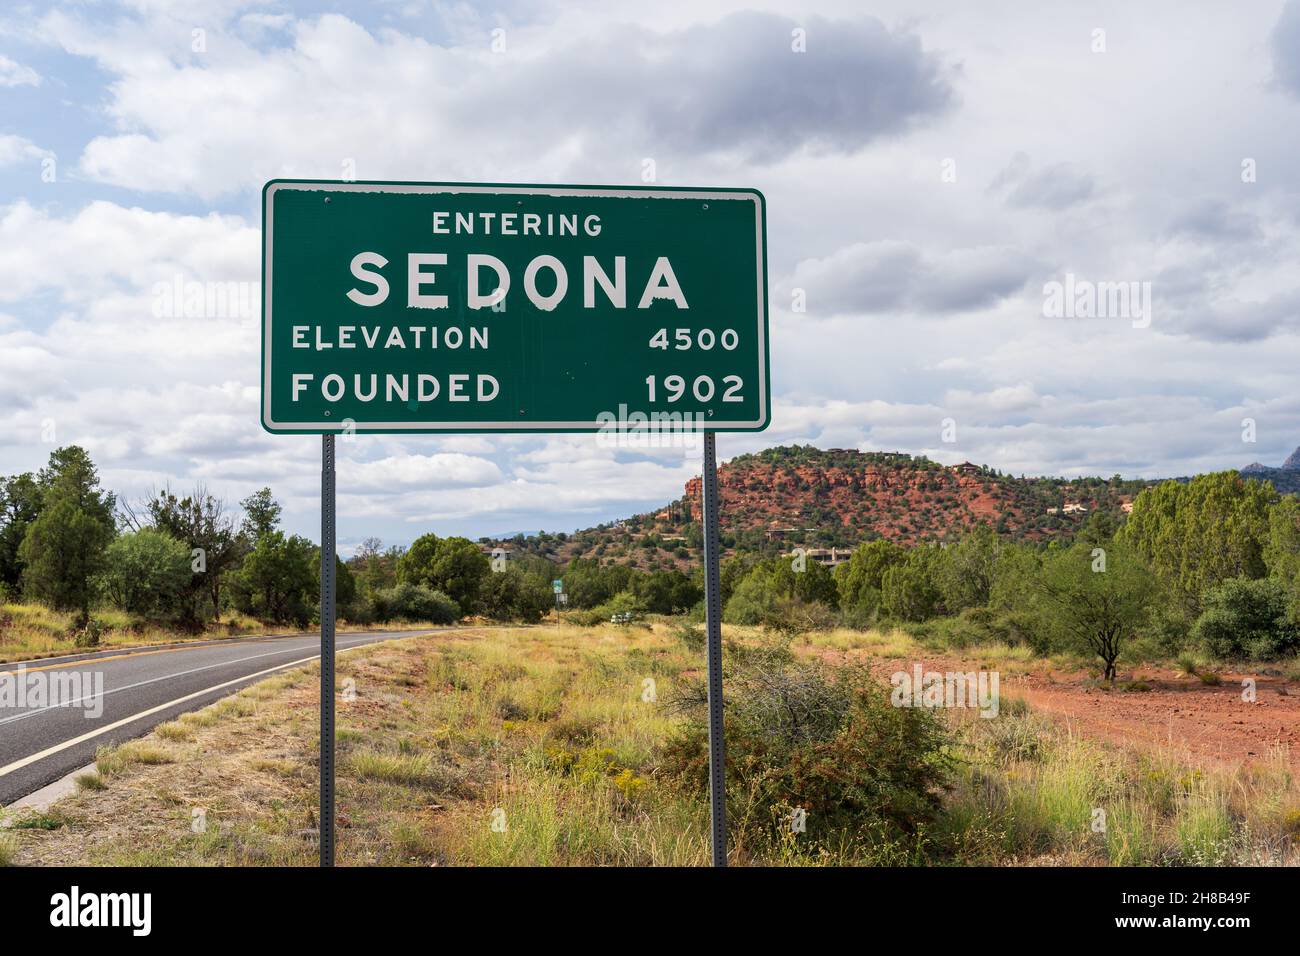 Beim Betreten von Sedona Elevation 4500 und gründete 1902 Schild mit Straße und Landschaft im weichen Fokus dahinter Stockfoto